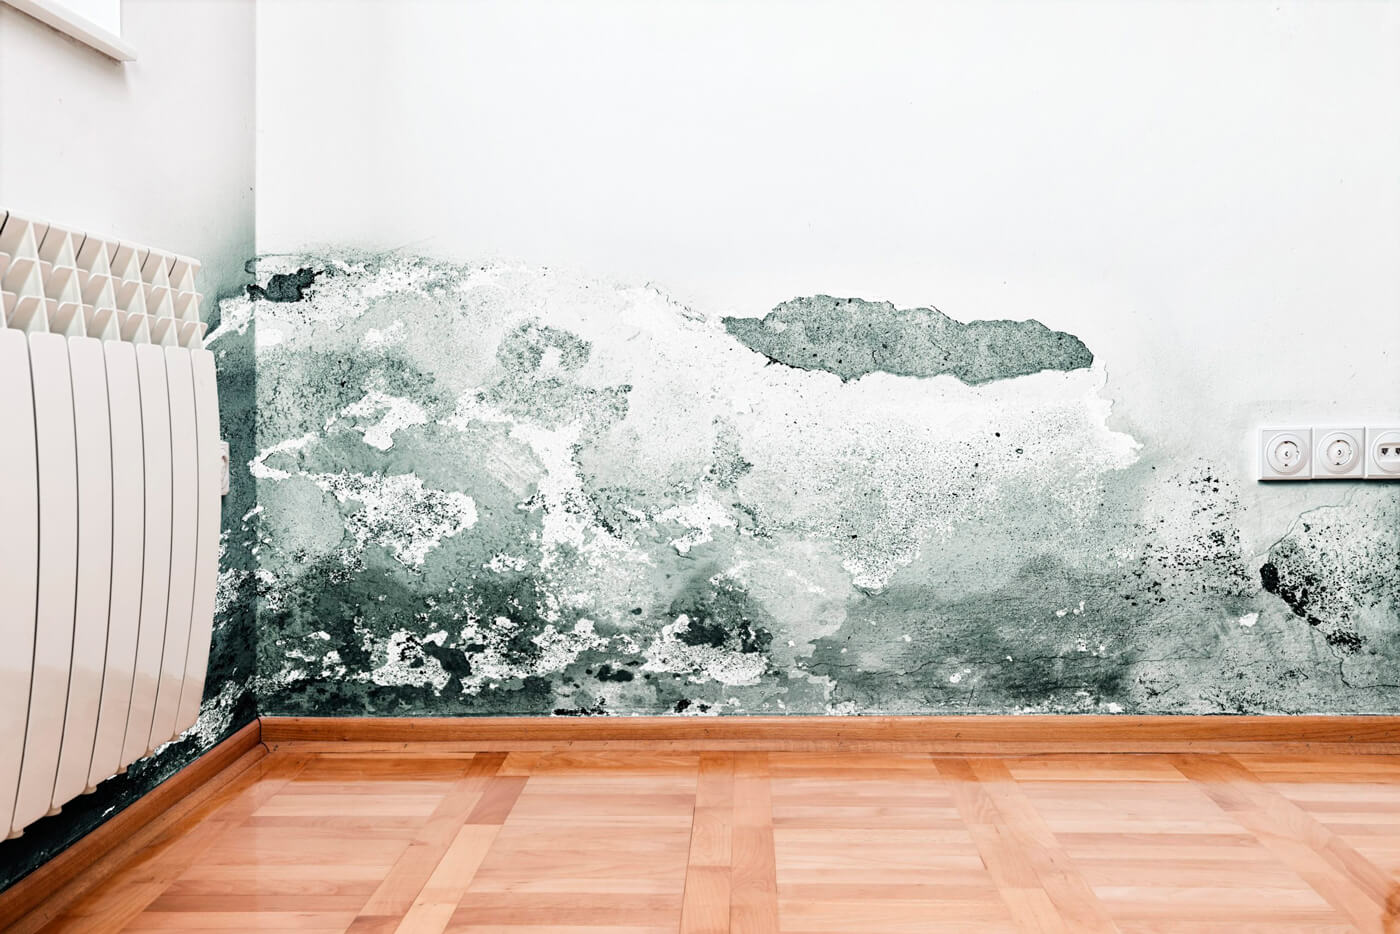 Remova o mofo das paredes FAZENDO ISTO AQUI e mantenha a beleza das cores e texturas